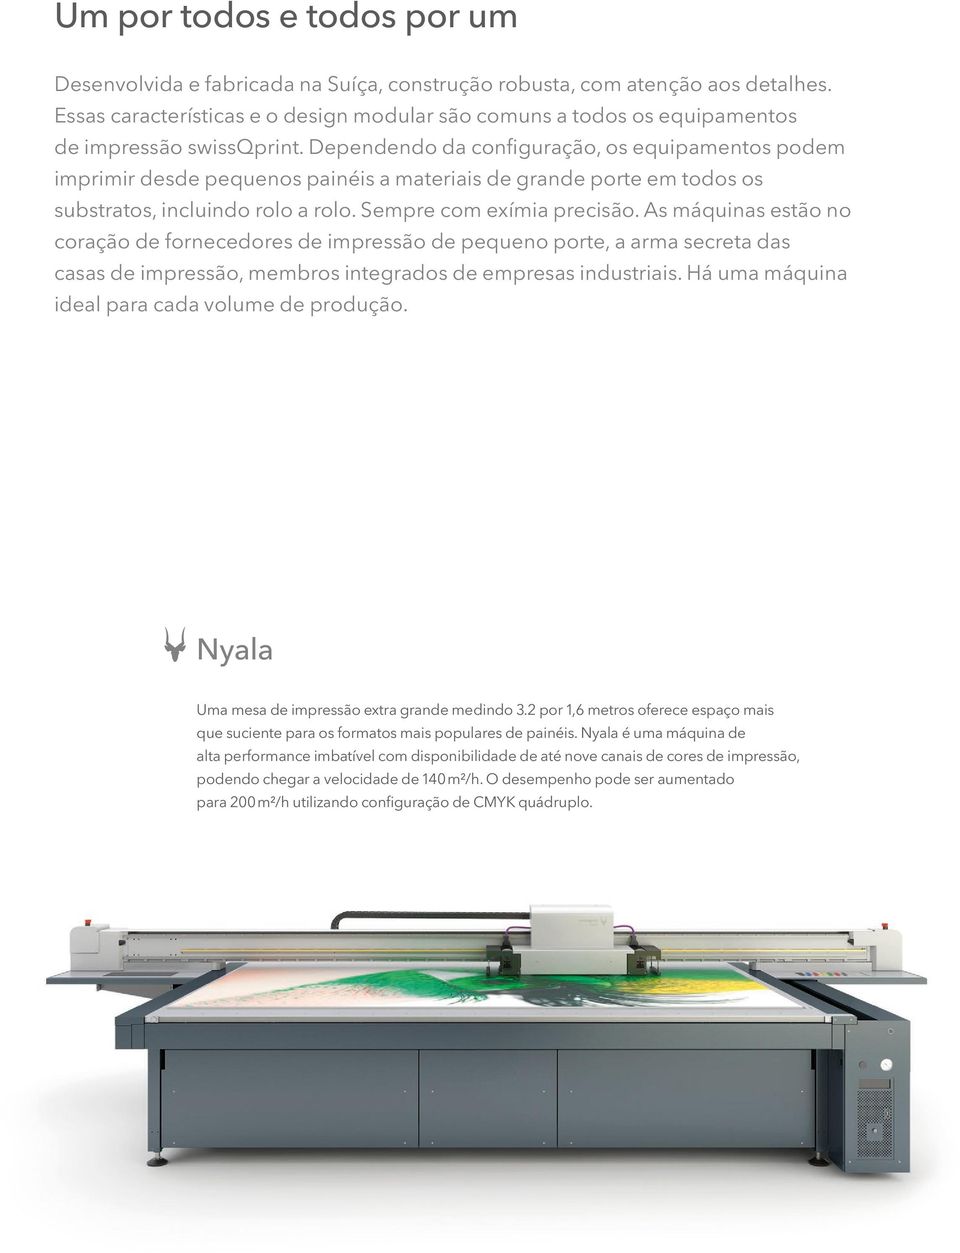 Dependendo da configuração, os equipamentos podem imprimir desde pequenos painéis a materiais de grande porte em todos os substratos, incluindo rolo a rolo. Sempre com exímia precisão.